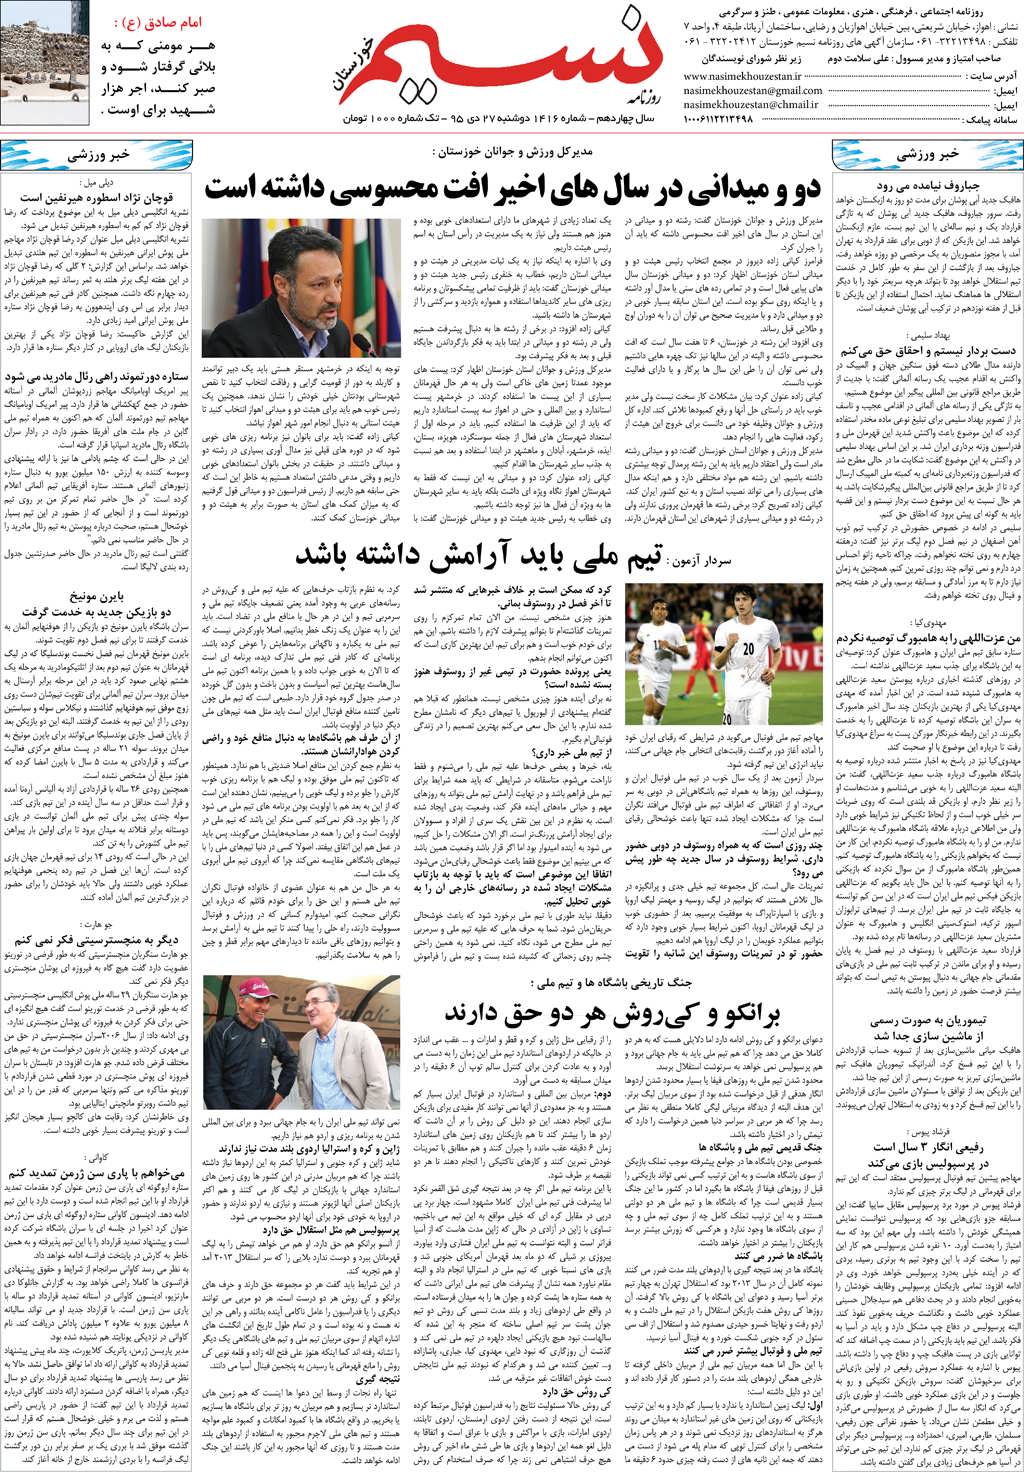 صفحه آخر روزنامه نسیم شماره 1416